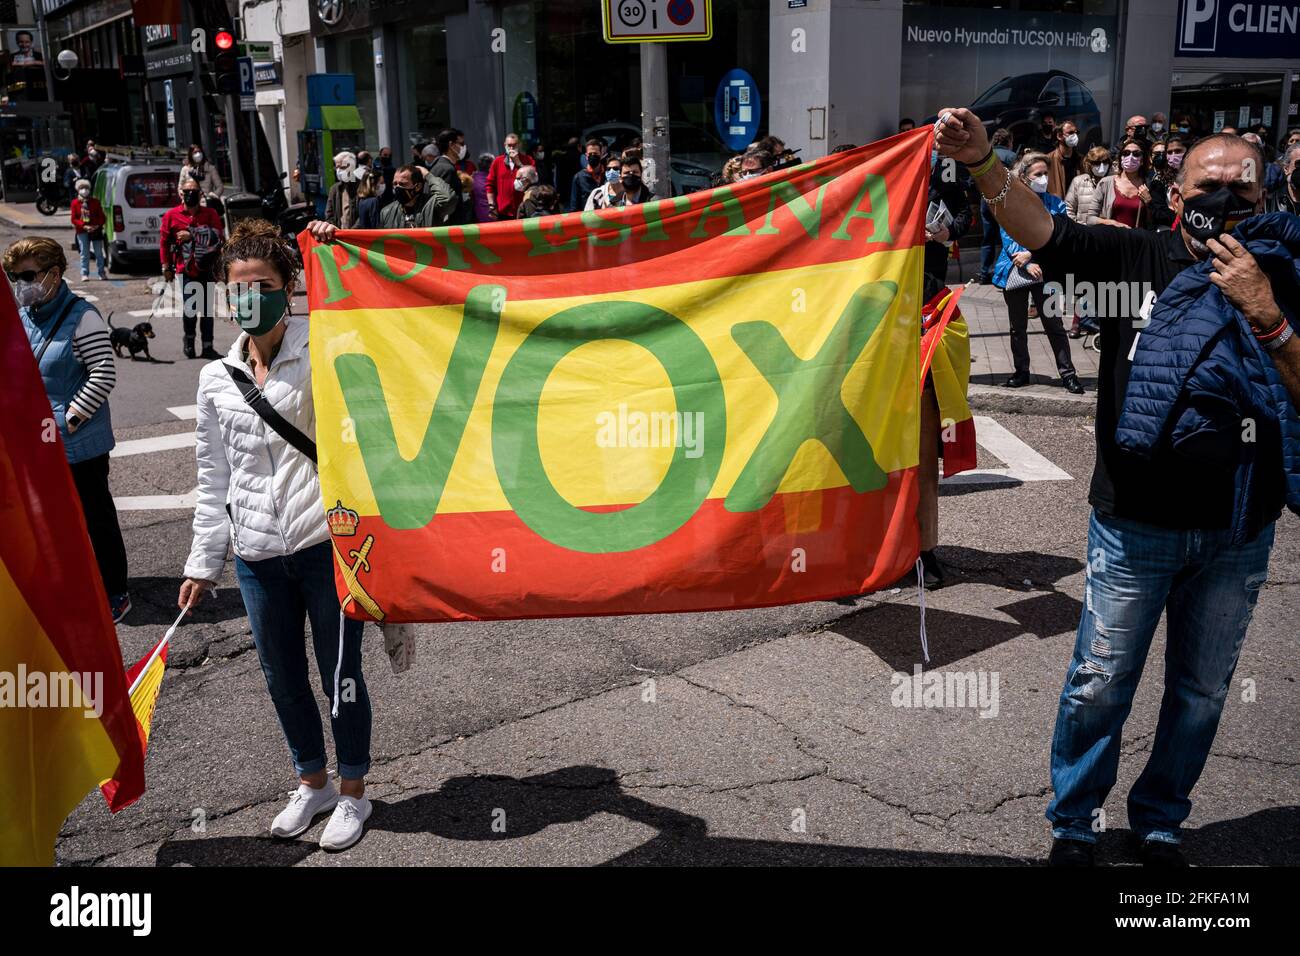 Les fans ont un drapeau d'Espagne avec un logo VOX sur la Plaza Conde de Casal.dans le cadre de la Journée internationale du travail du 1er mai, le parti d'extrême-droite espagnol VOX lance le syndicat "Solidaridad". Avec des discours anti-communistes, anti-écologiques, anti-illégaux, anti-féministes et ultra-nationalistes, Santiago Abascal, président de VOX, Rocio Monasterio, candidat aux élections de la Communauté de Madrid, et Rodrigo Alonso, secrétaire général du syndicat Solidaridad ont participé à la réunion sur la Plaza de Comte Casal. La loi a lieu quelques jours avant les élections du C Banque D'Images